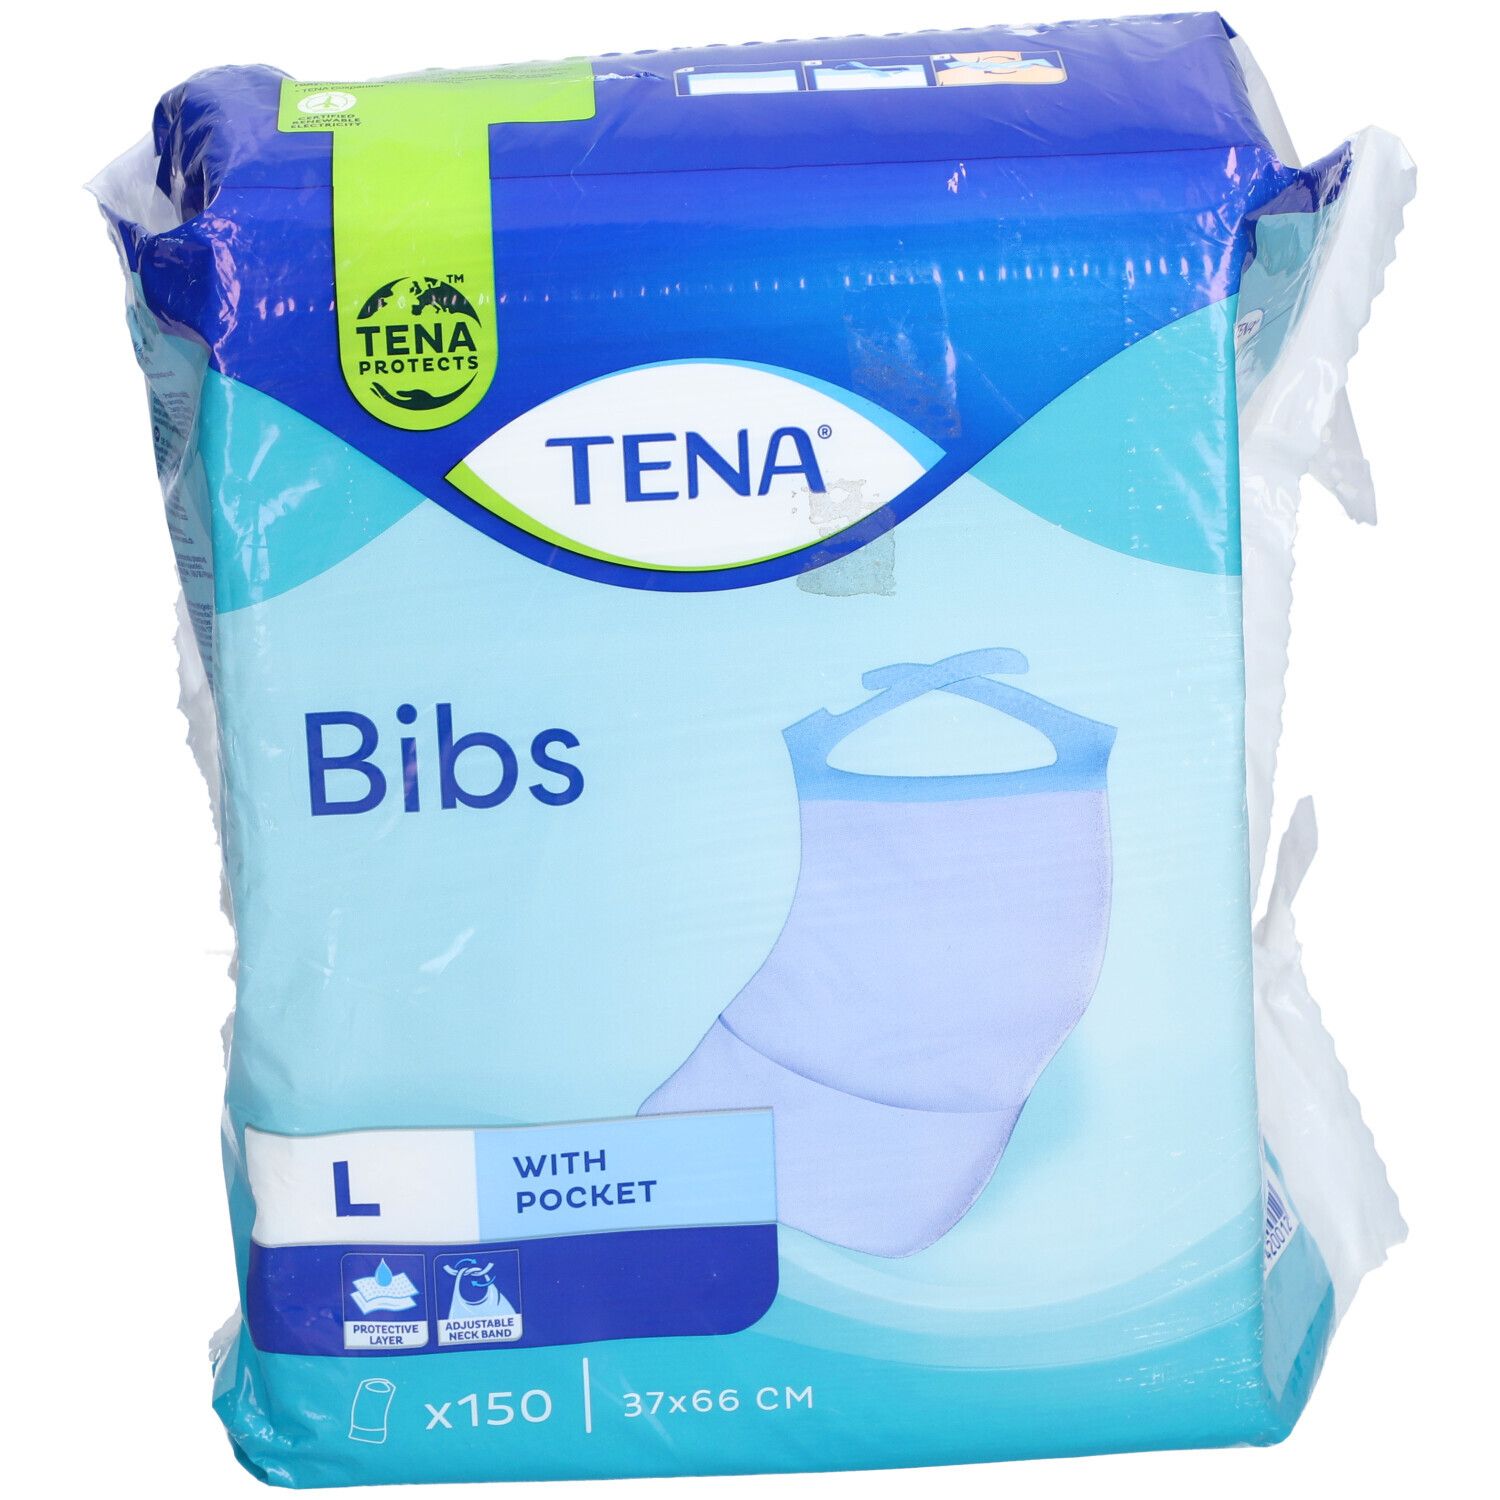 TENA® Bibs 37 x 68 cm